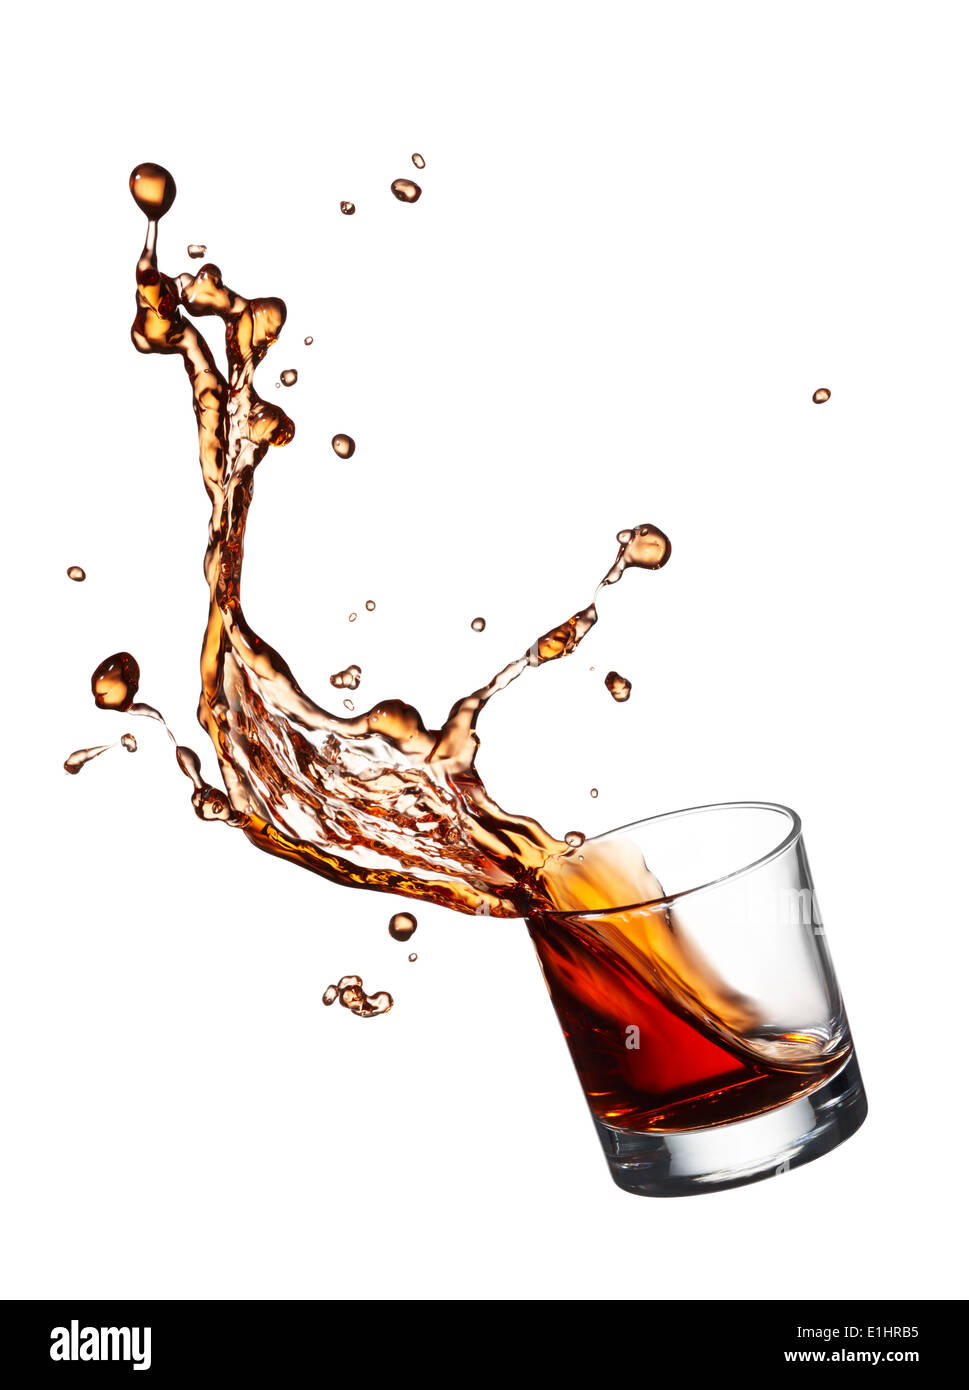 glass of splashing whisky isolated on white Stock Photo